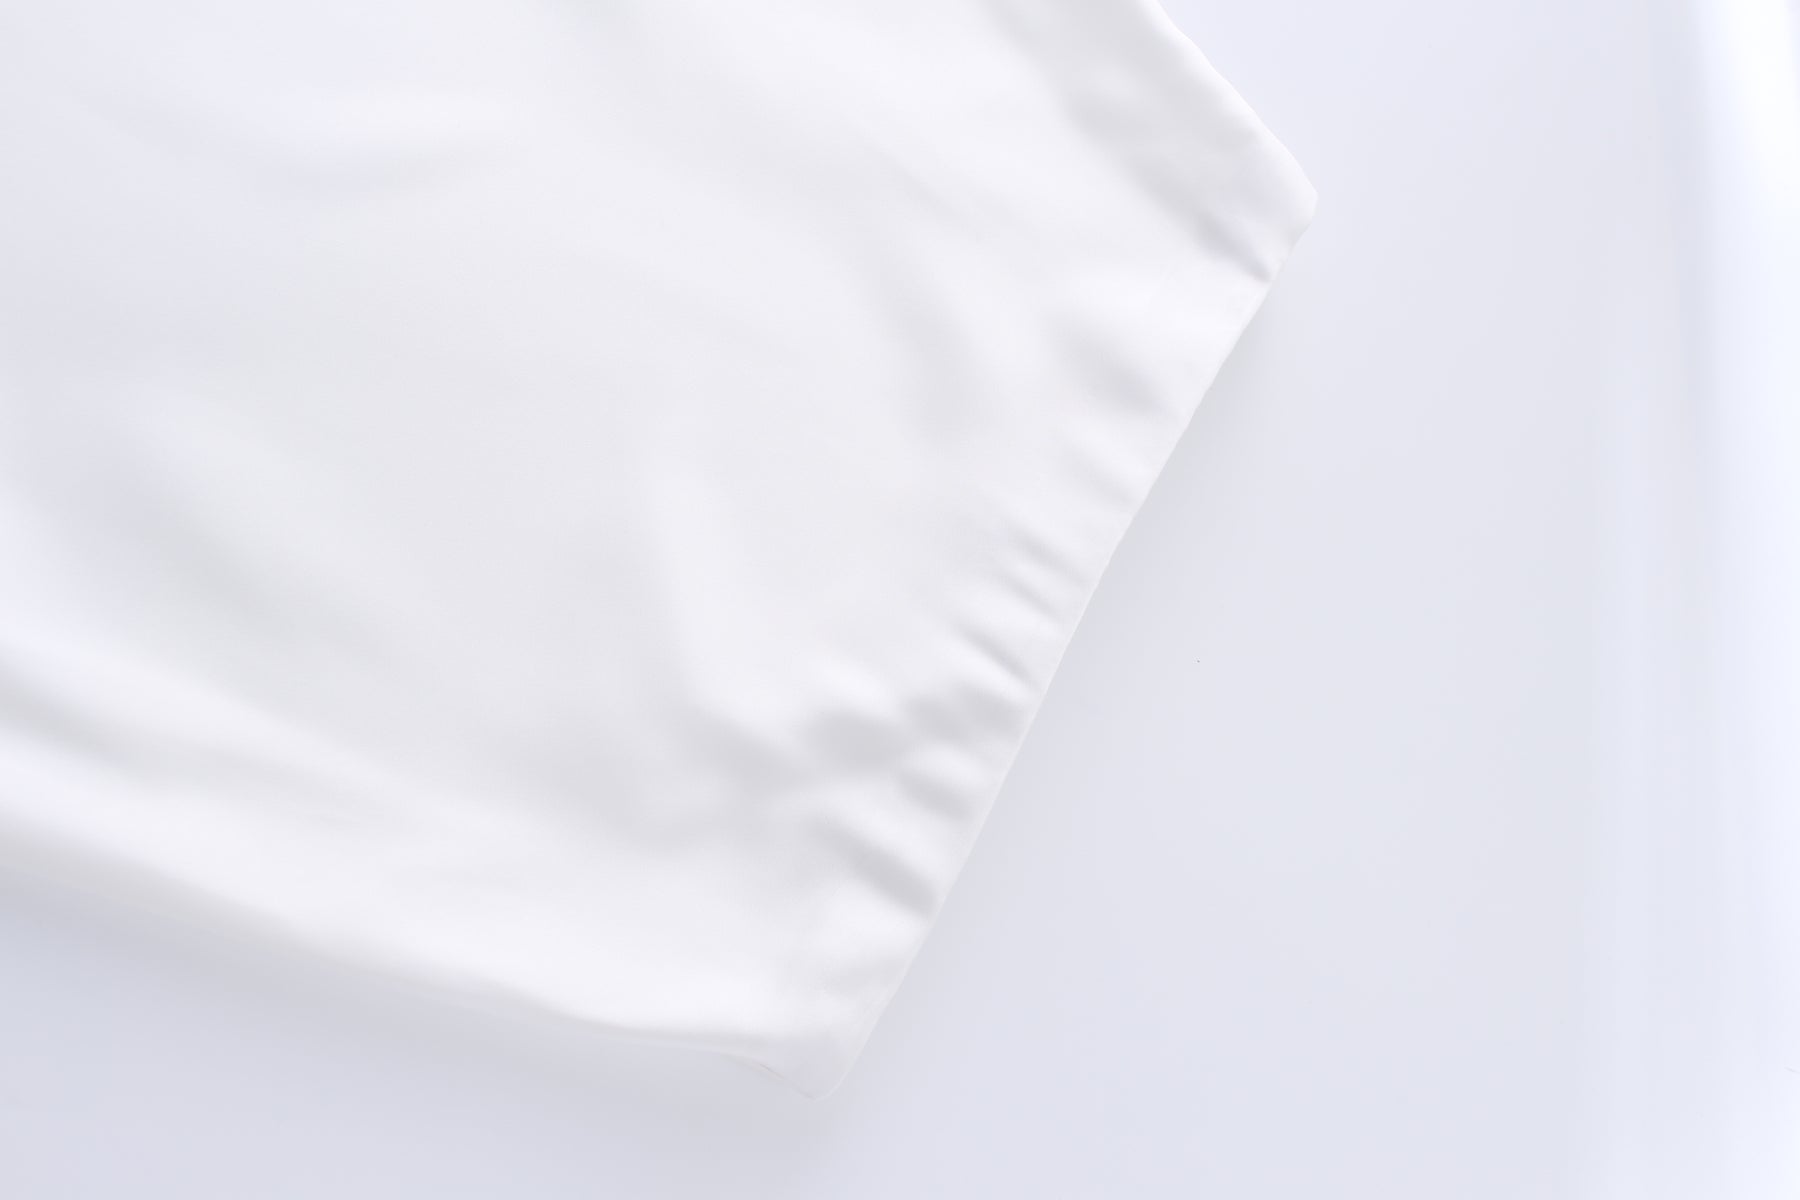 Solid Satin Slip Skirt-White